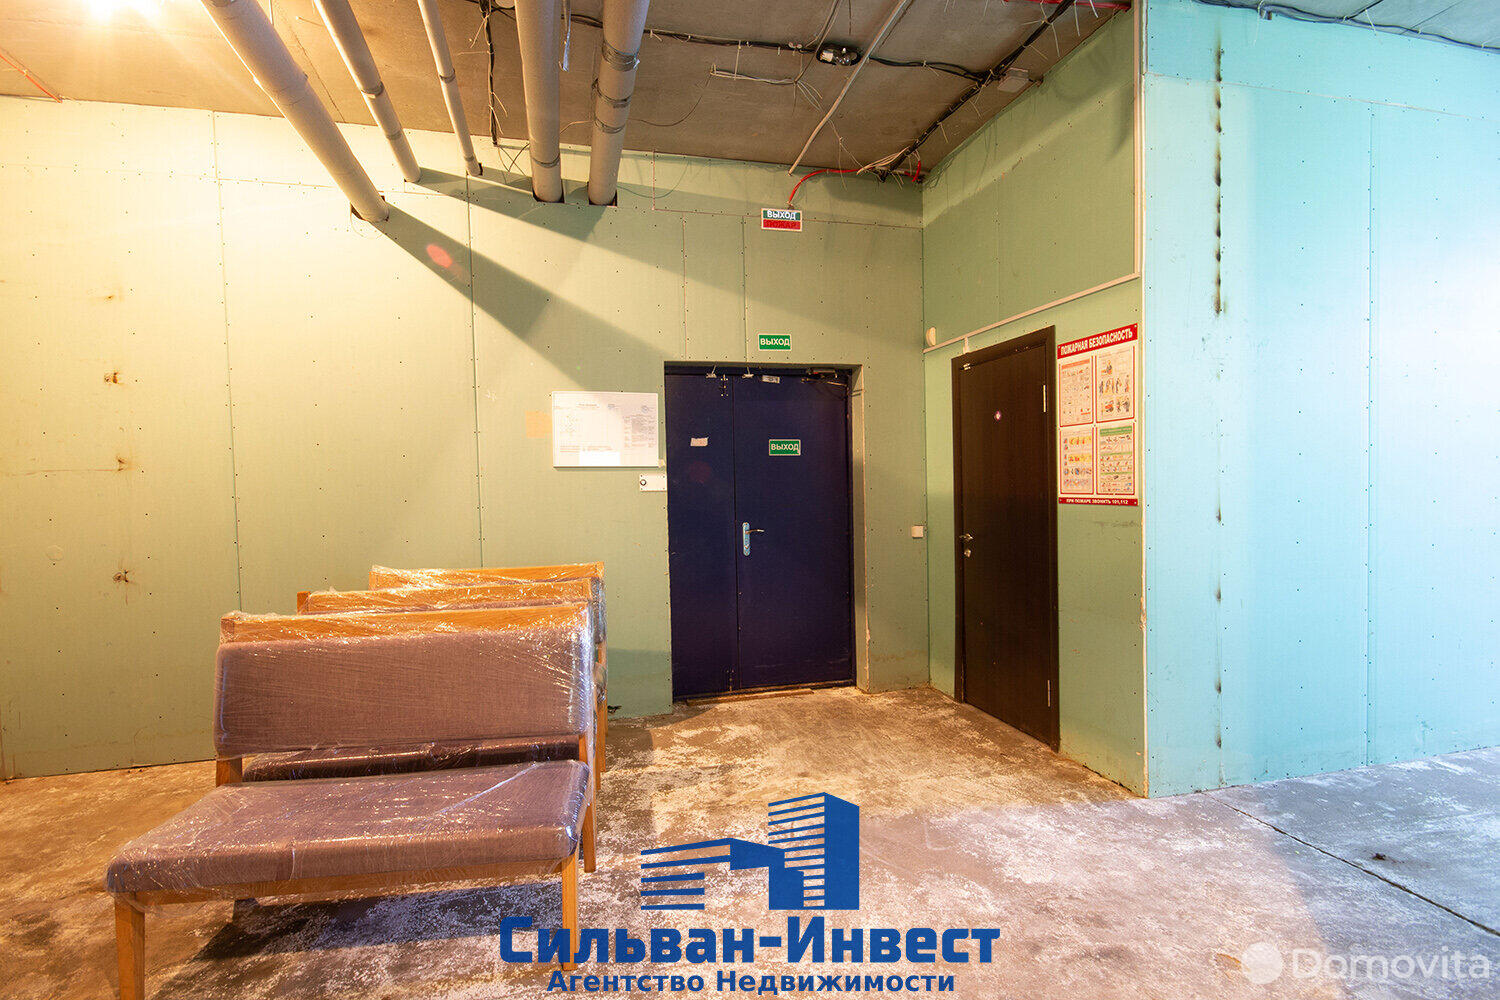 Аренда складского помещения на ул. Щорса 3-я, д. 9 в Минске, код 963218 - фото 3